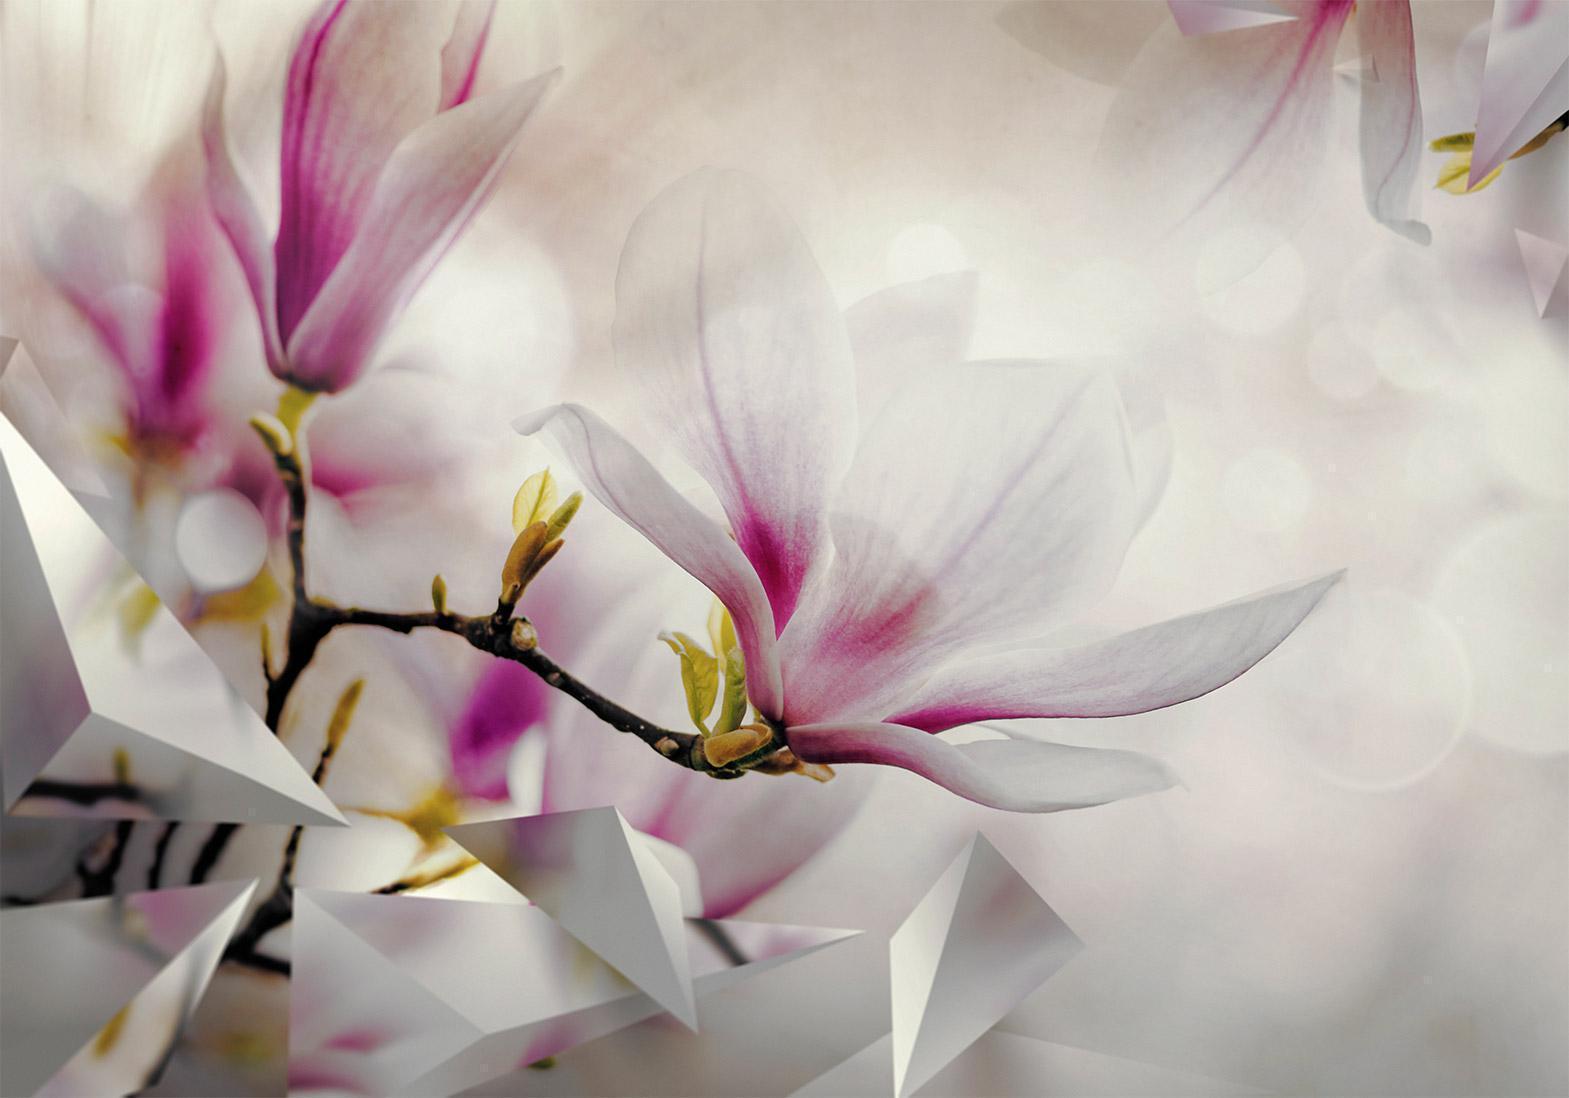 Papier peint - Subtle Magnolias - Third Variant